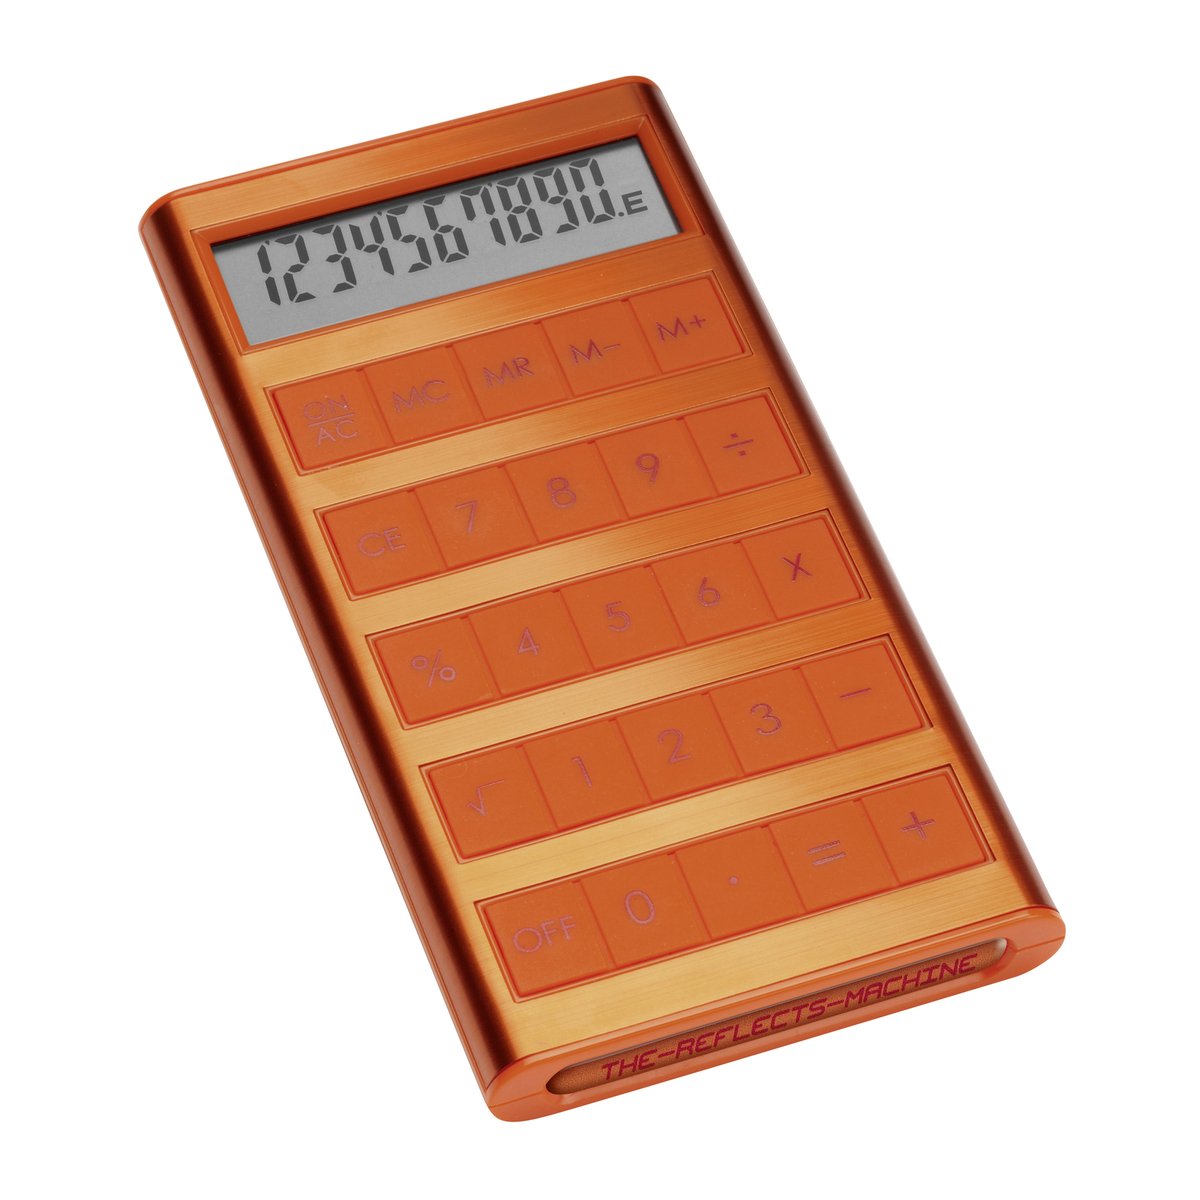 Solar calculator REEVES-MACHINE orange